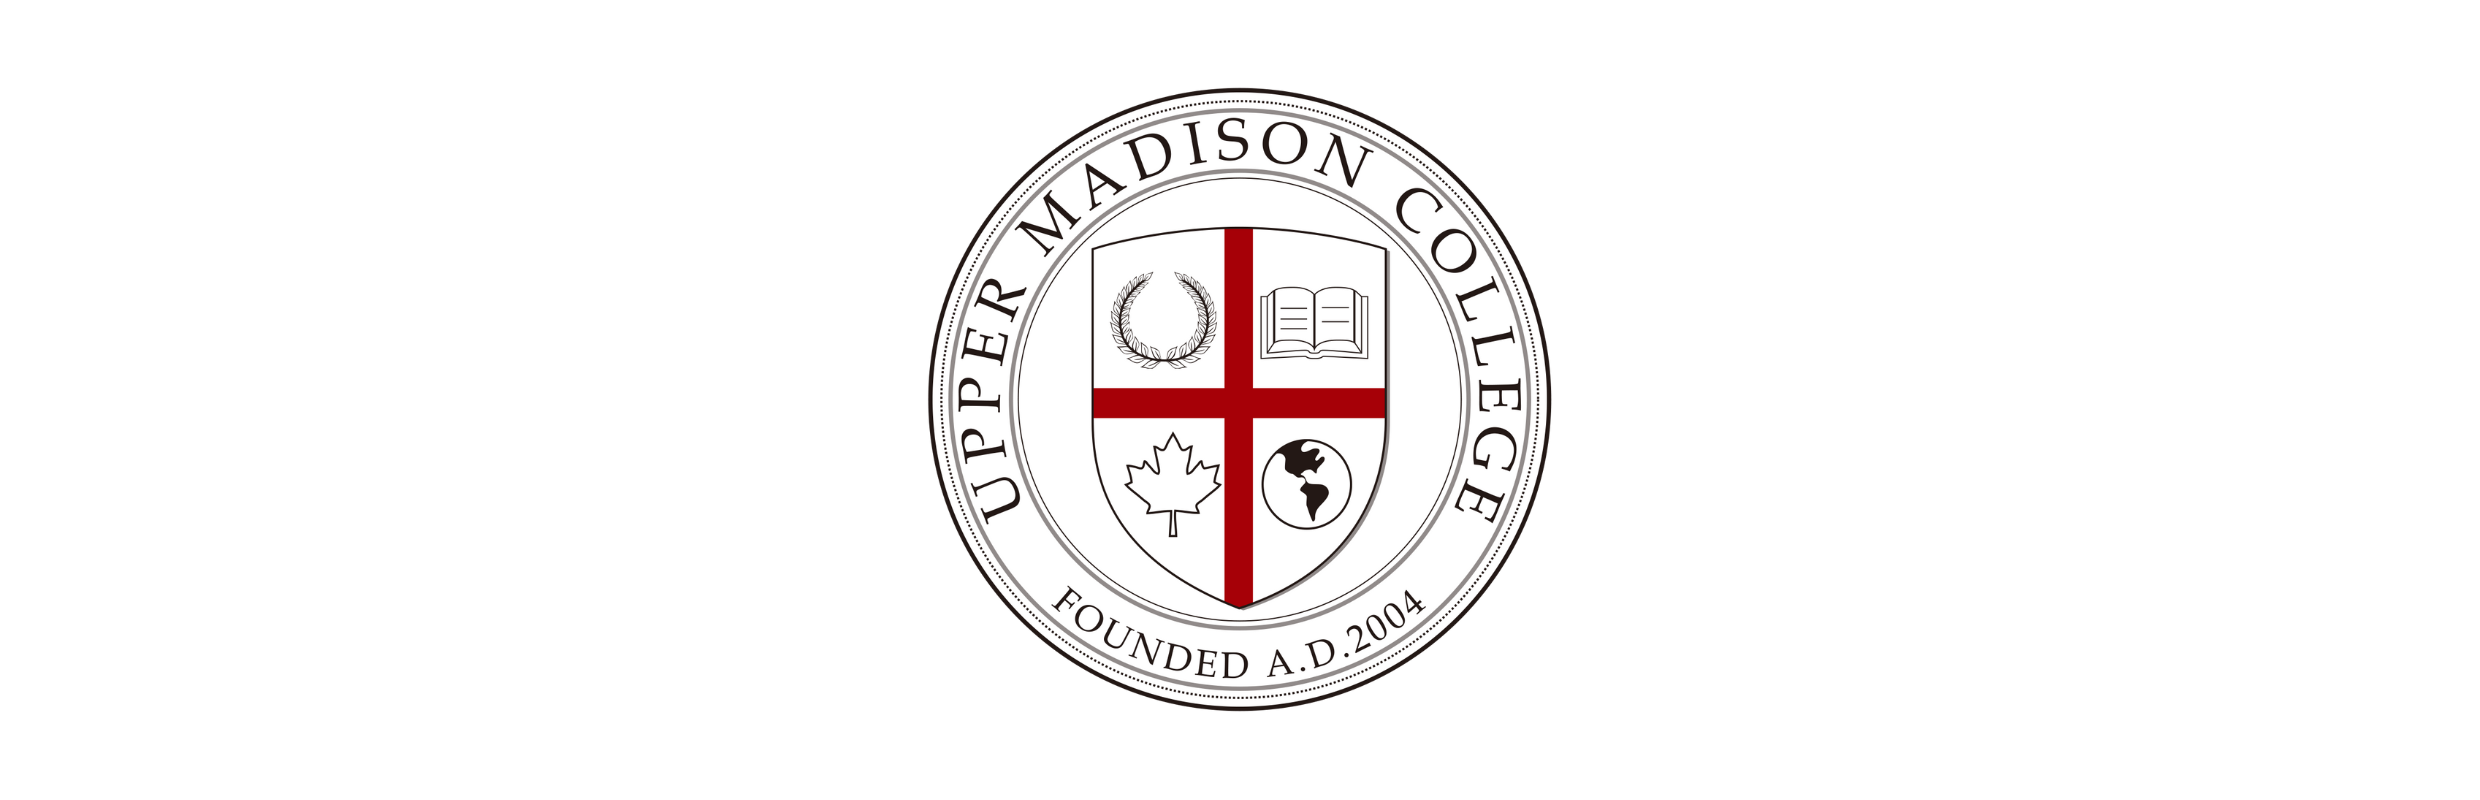 UMC Upper Madison College